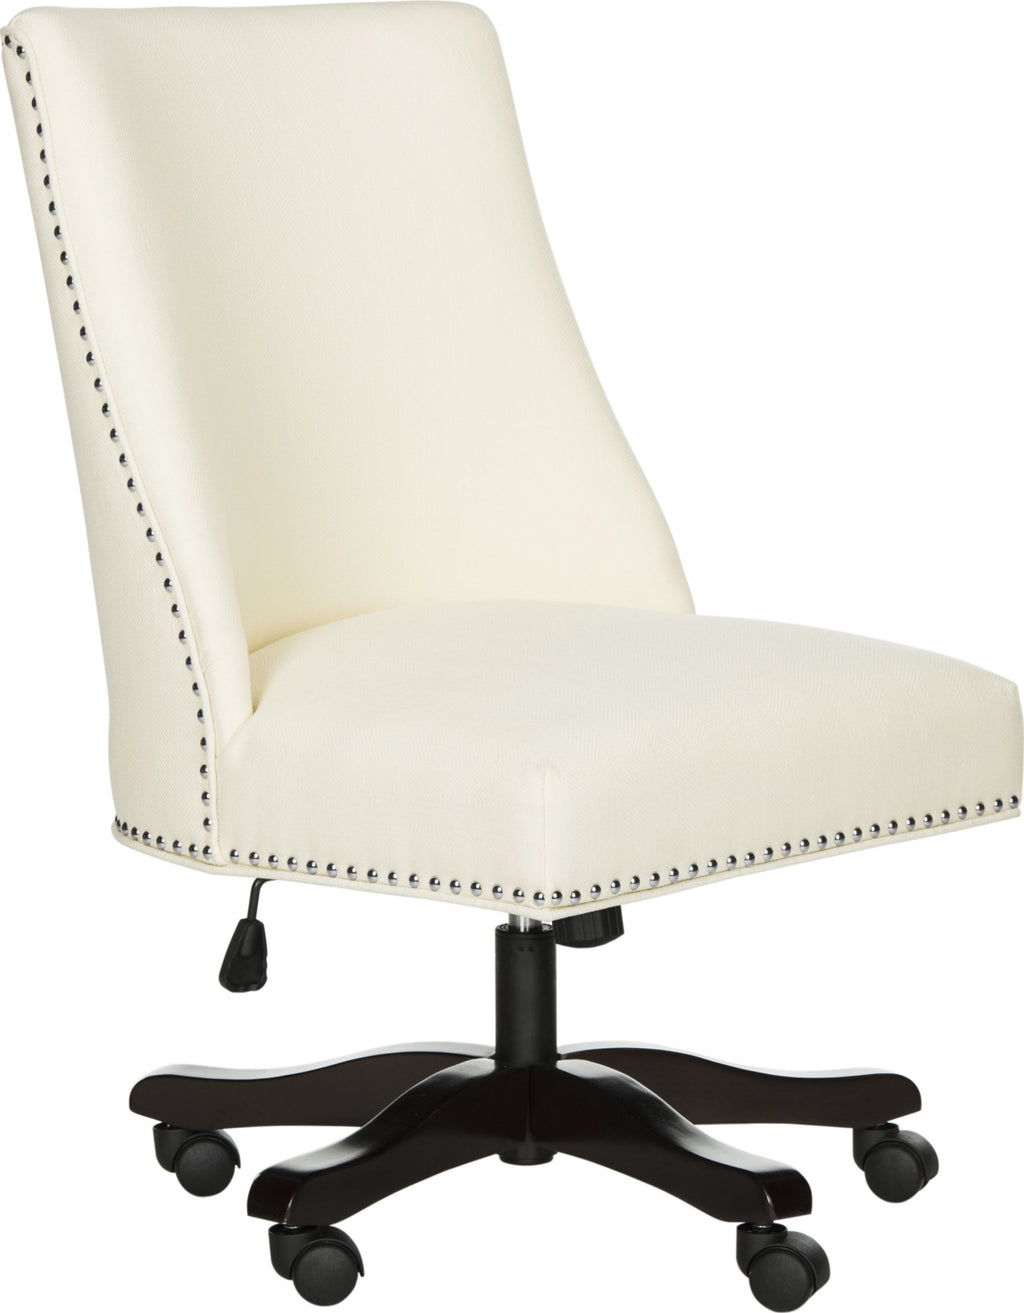 Safavieh Scarlet Desk Chair Cream  Feature